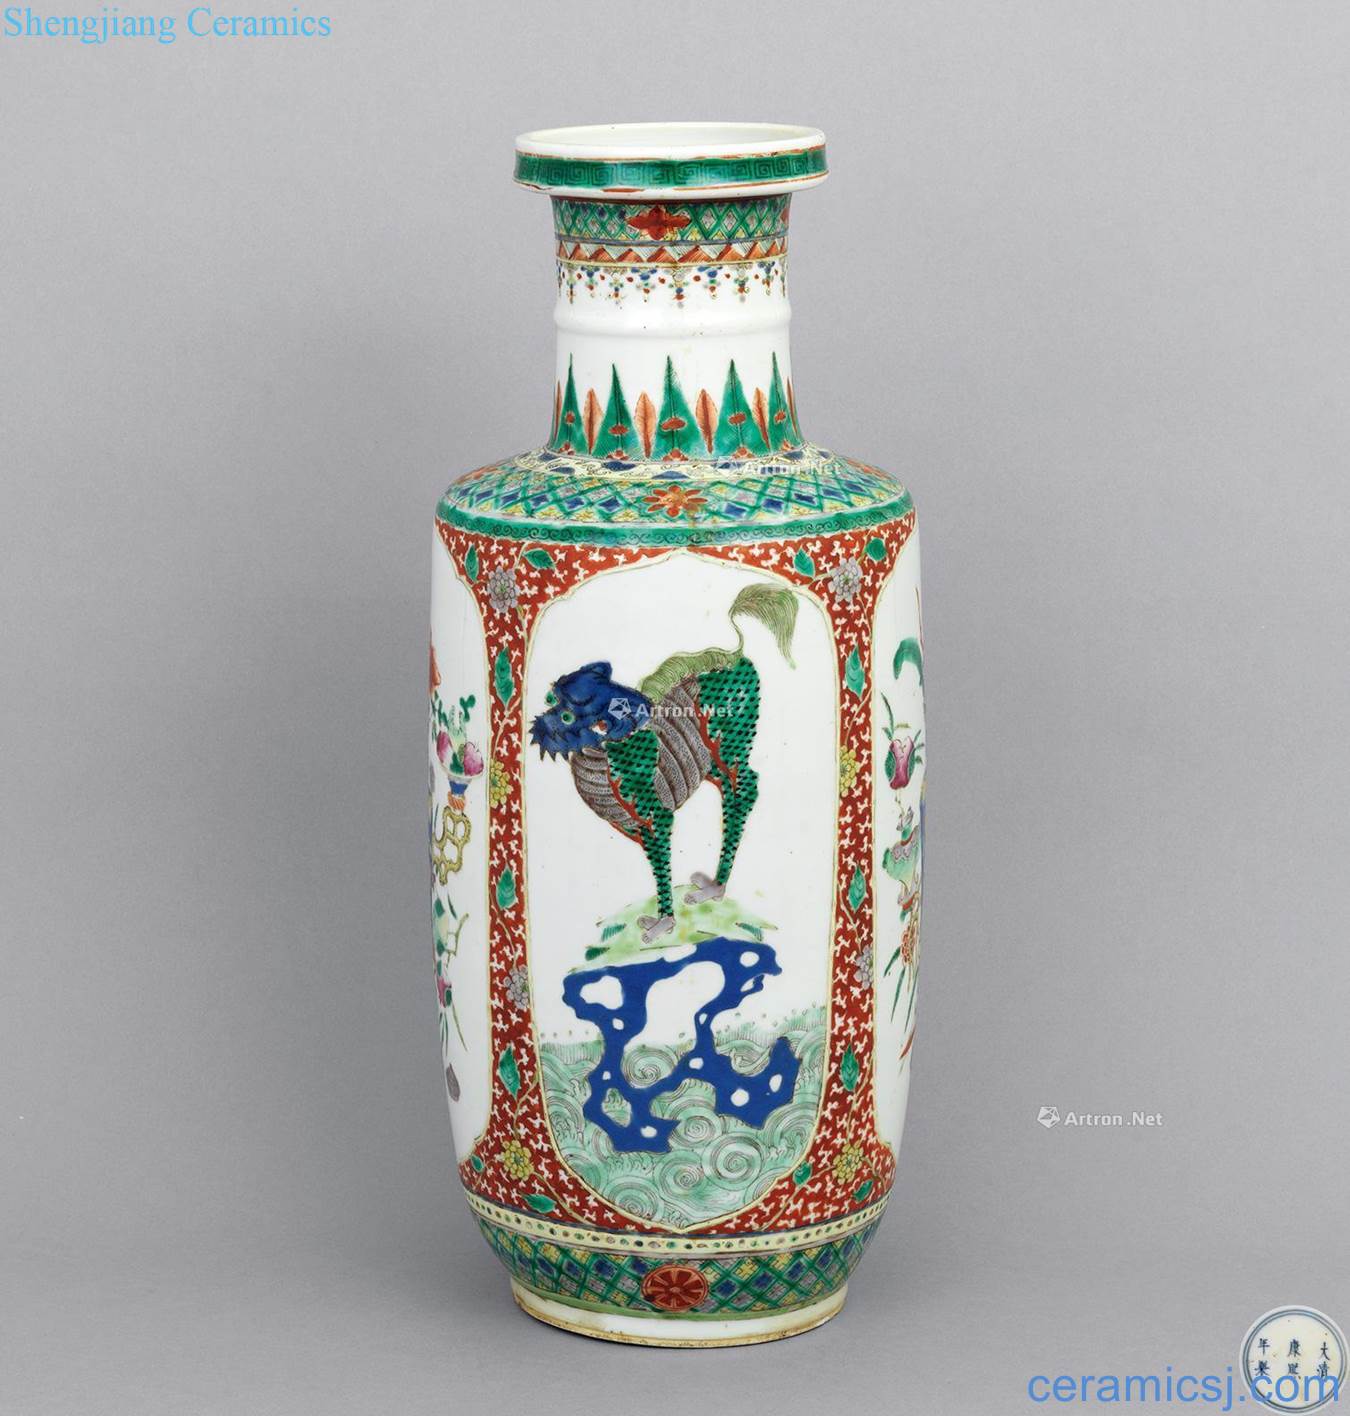 In late qing dynasty Kirin wooden stick bottle